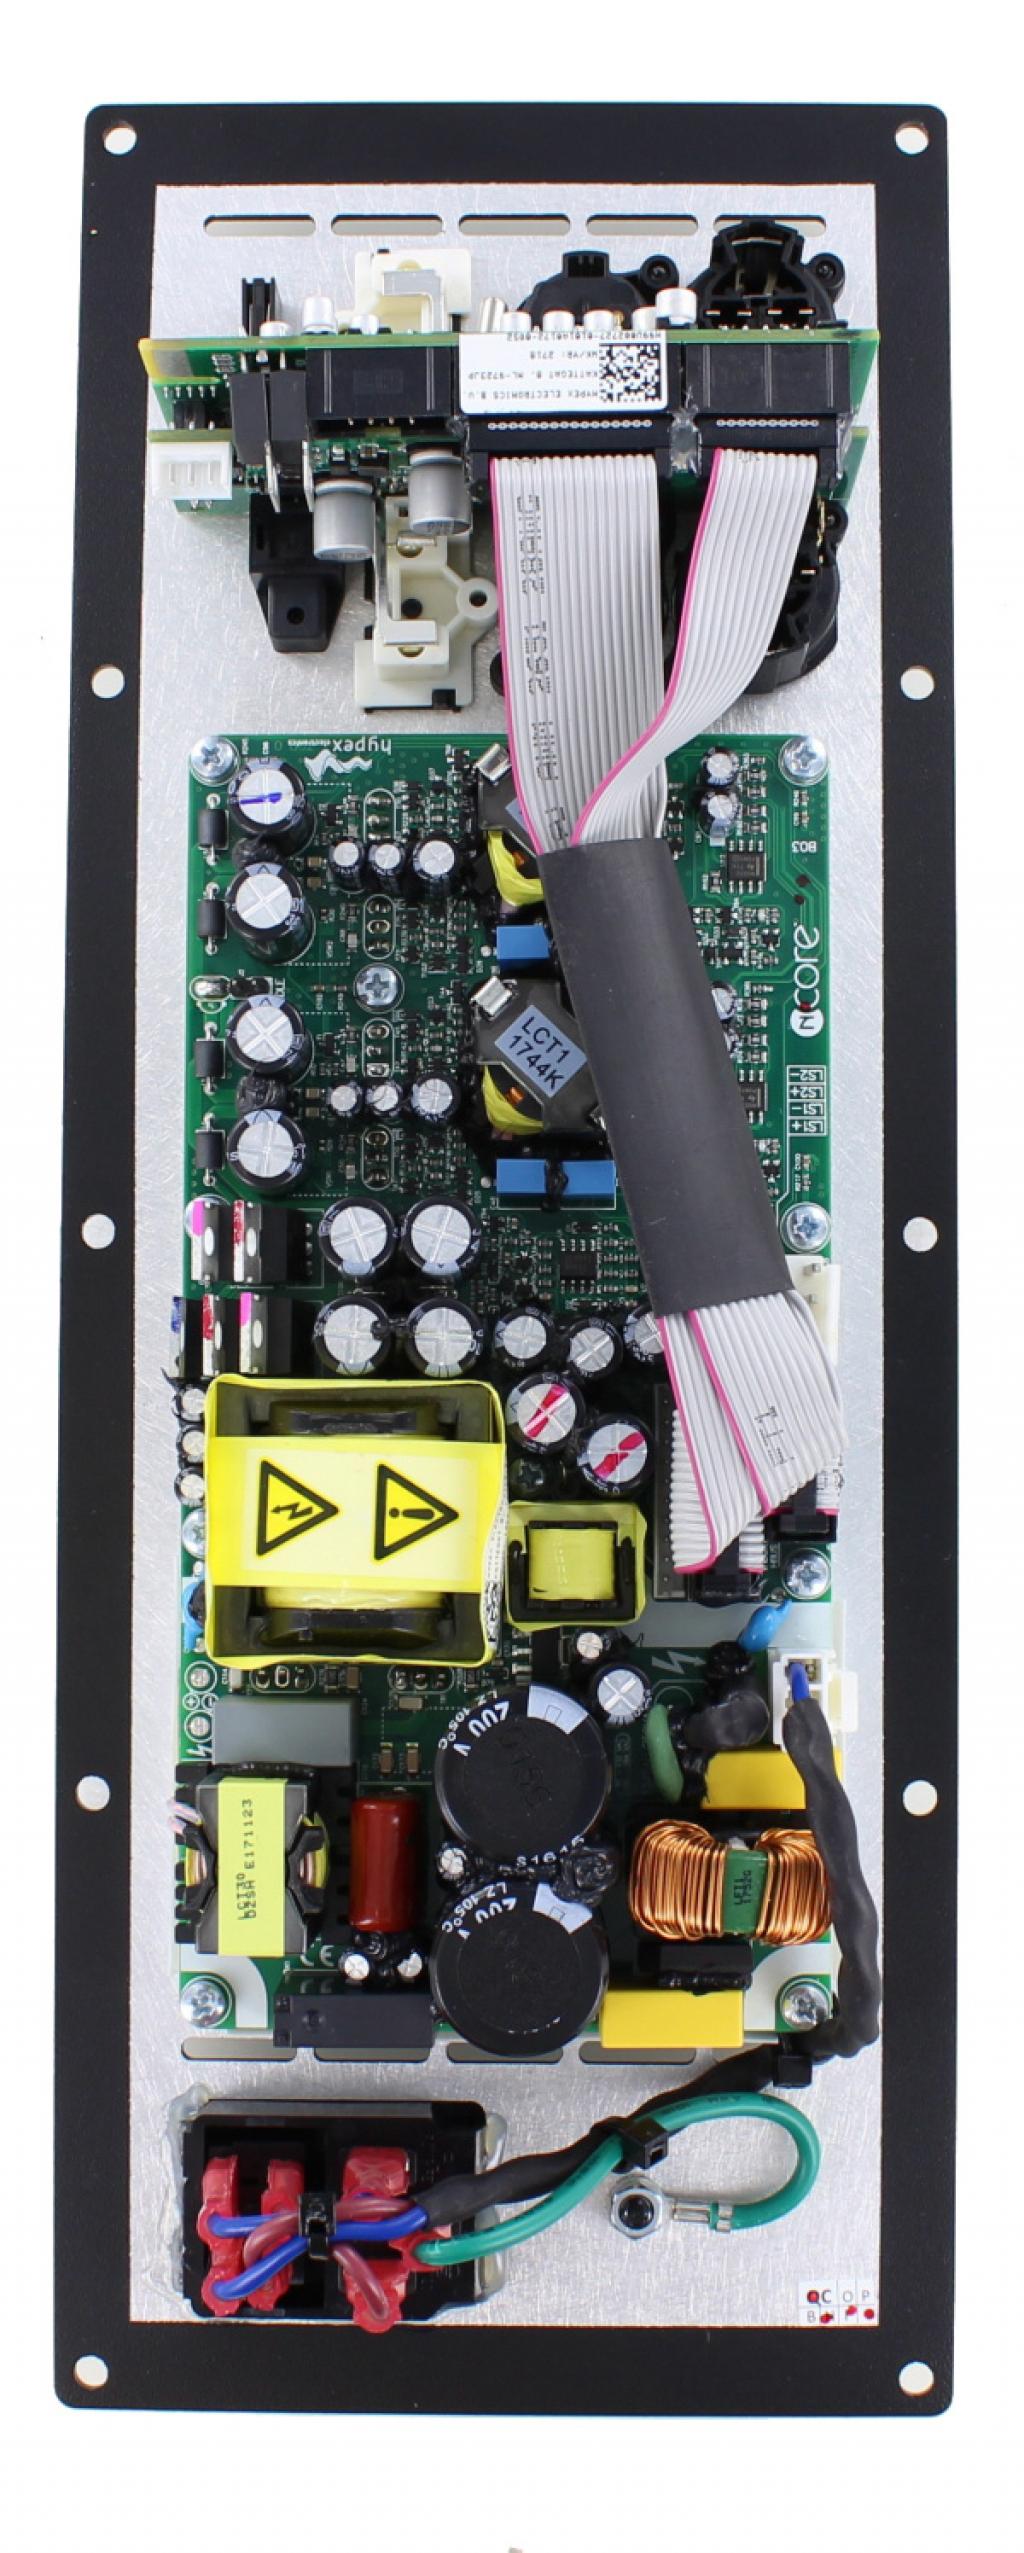 Modul Amplificator Hypex FA122